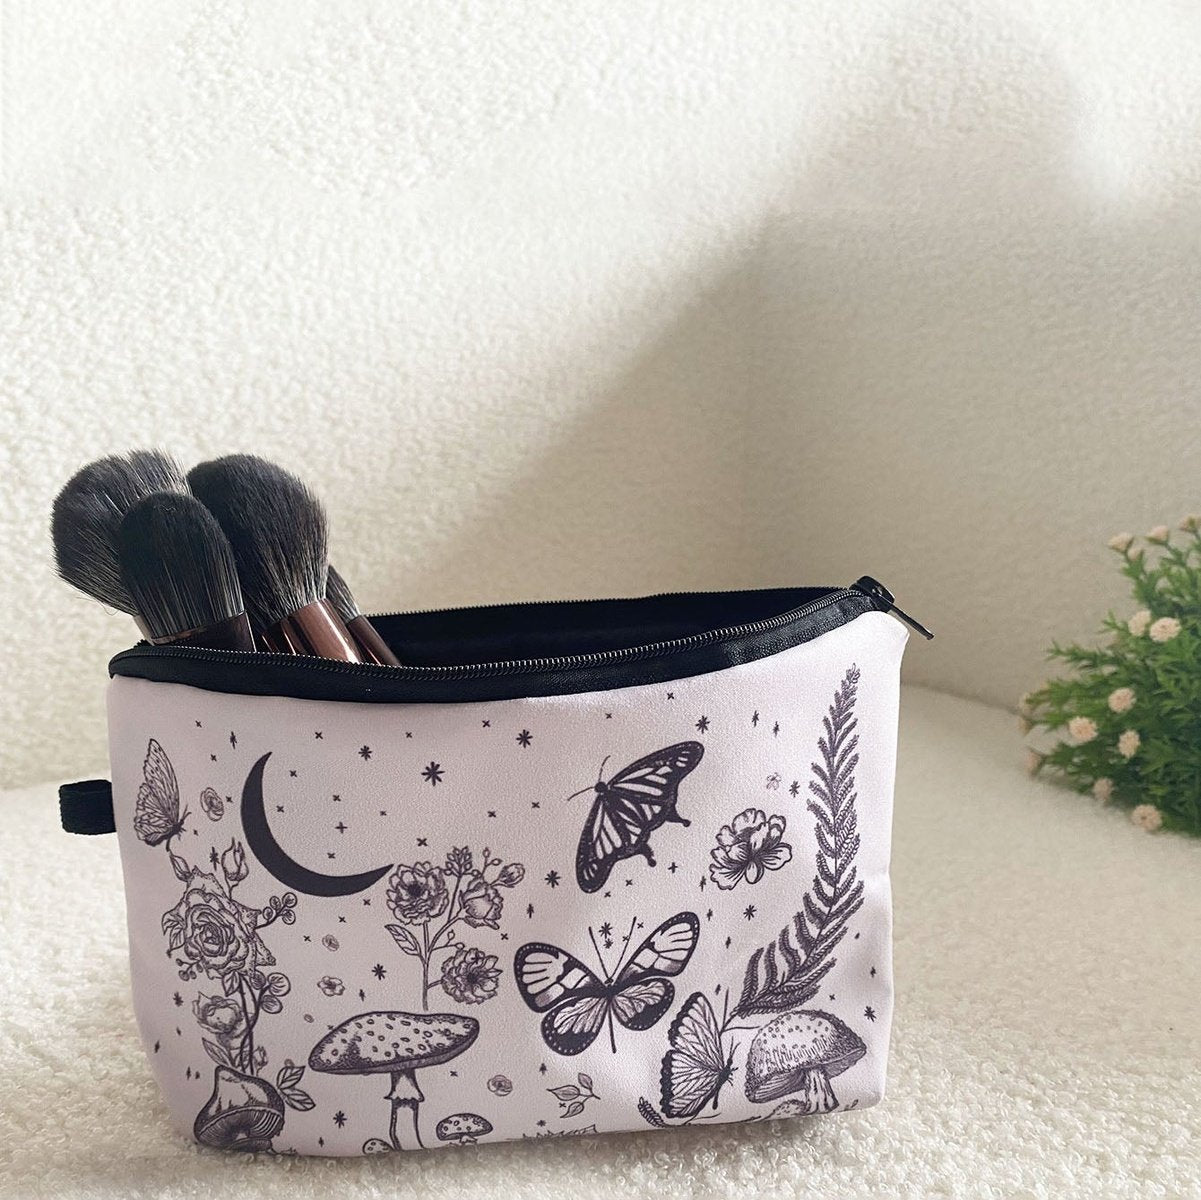 Butterfly Mushroom Print Zipper Makeup Bag